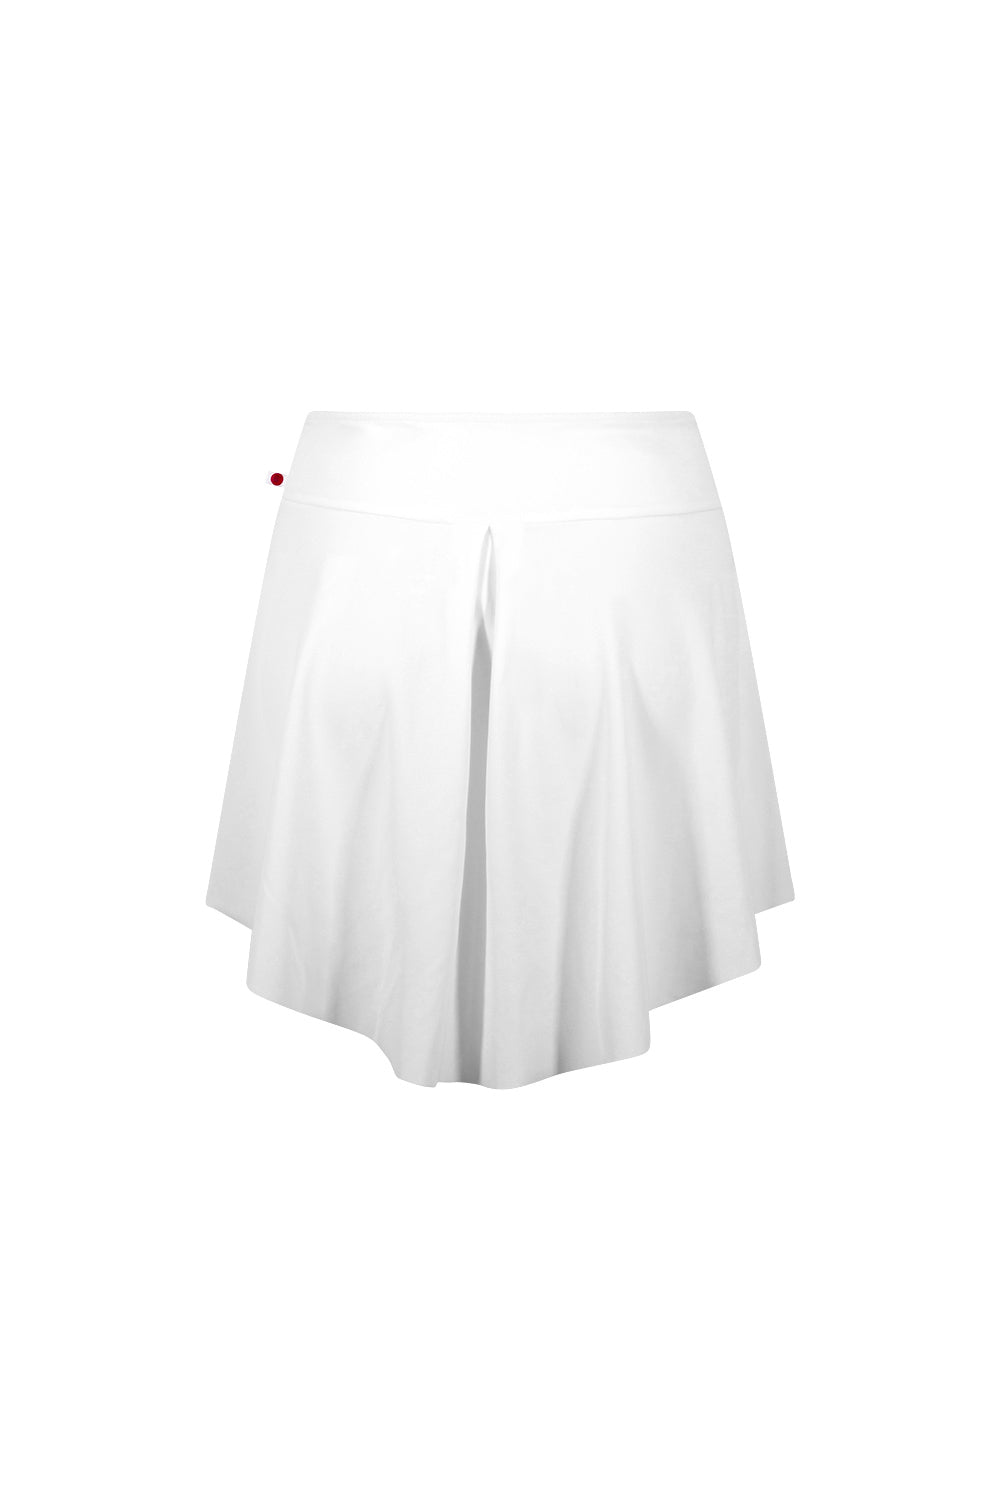 ユミコ イザベル ショートスカート（在庫商品）YUMIKO ISABELLE N-White